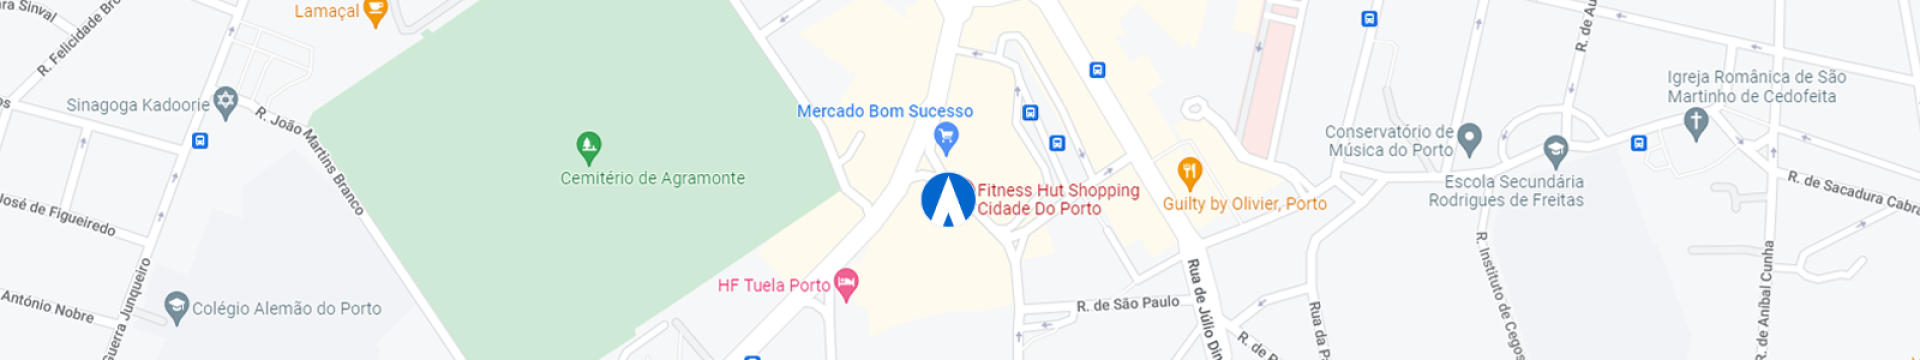 Shopping Cidade do Porto